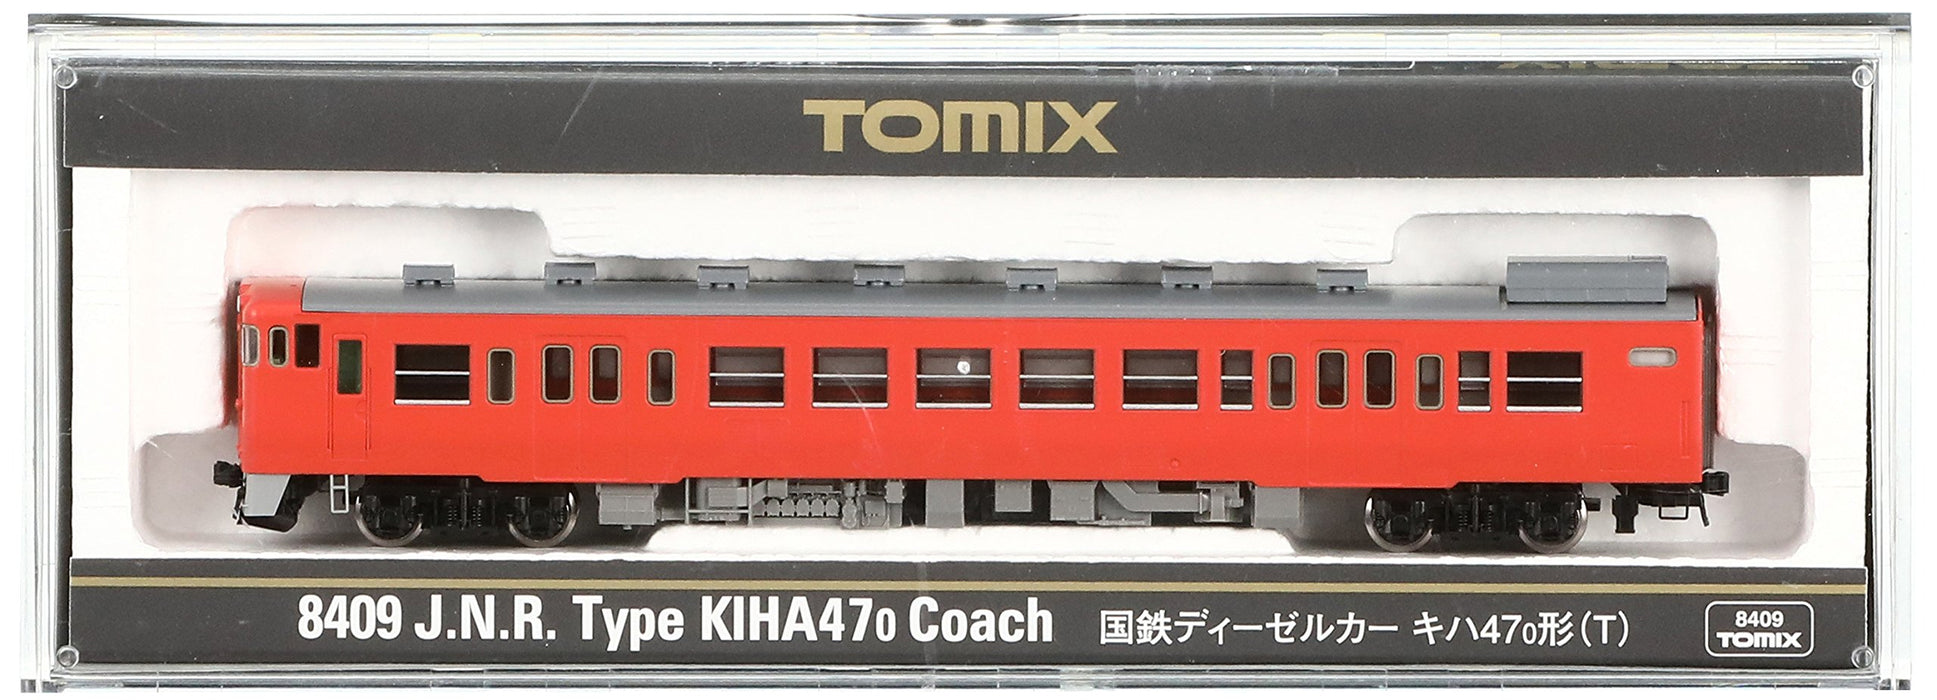 Tomytec Diesel Rail Car Model - Tomix N Gauge Kiha47 0 Type - T 8409